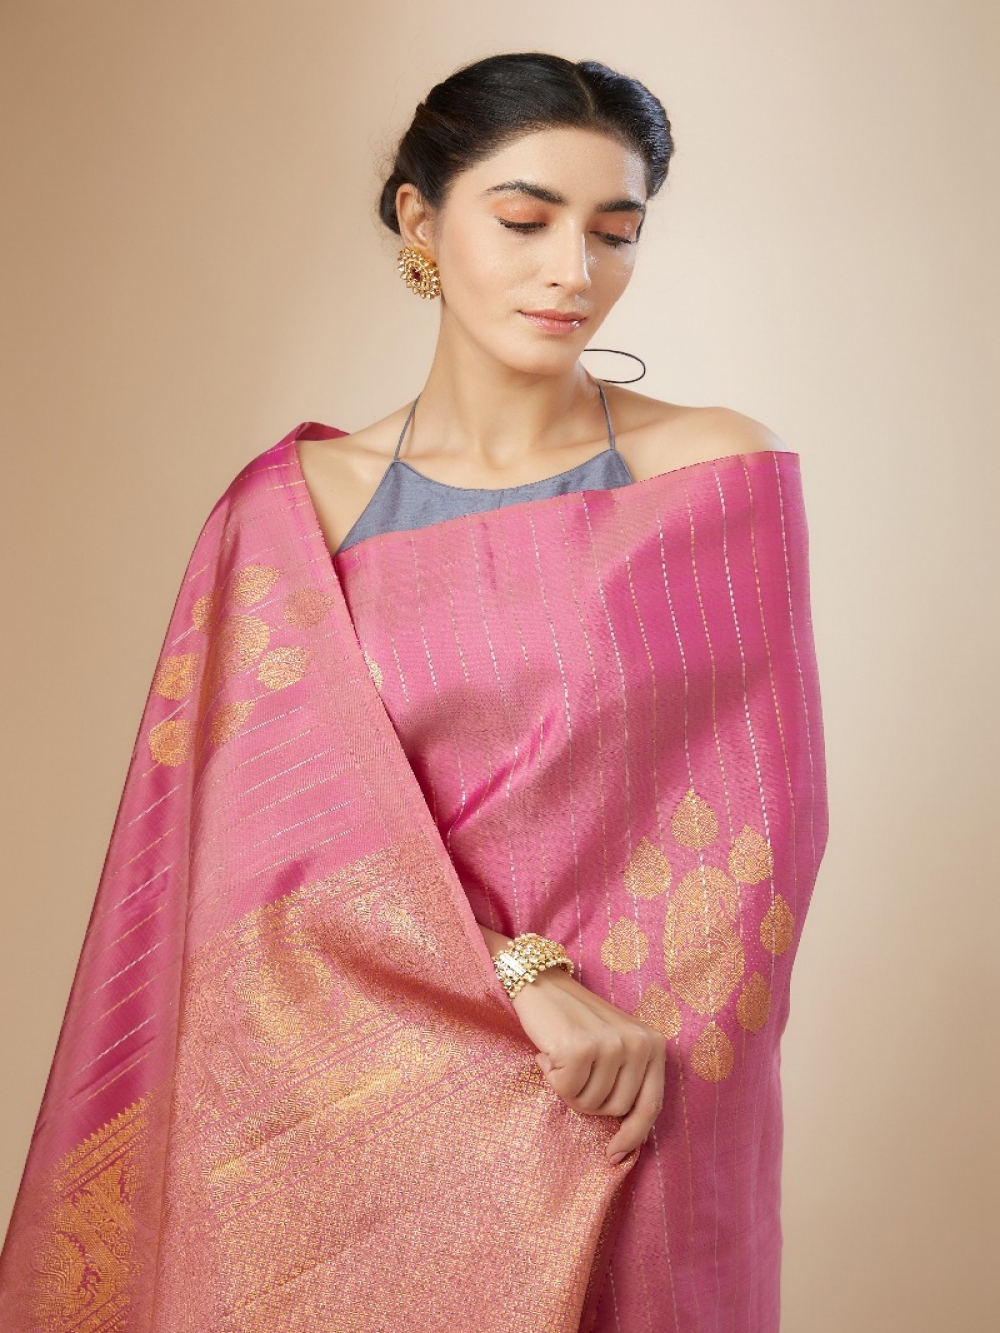 Latest Pure Silk Saree in Peach Color Online on dvanza - dvz0003388